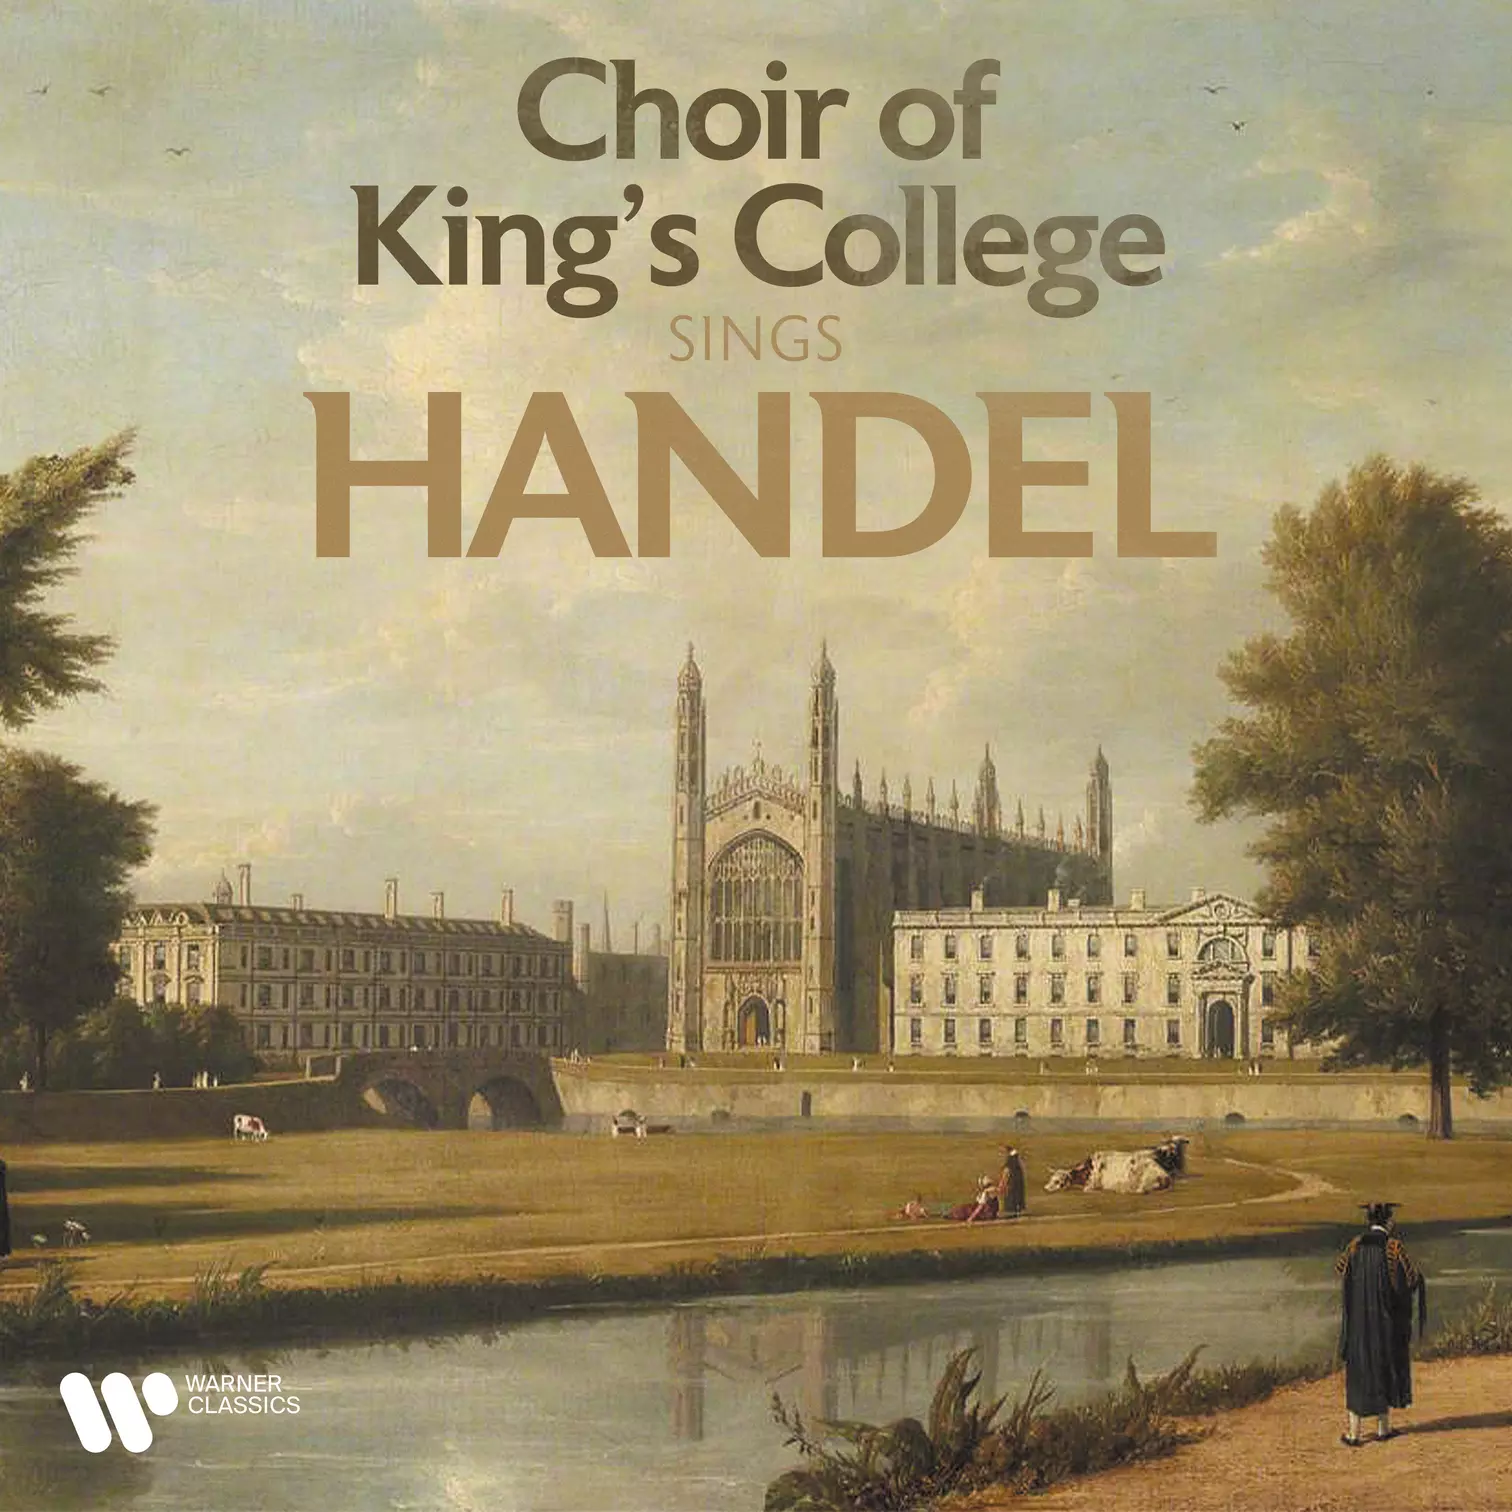 Choir of King’s College Sings Handel